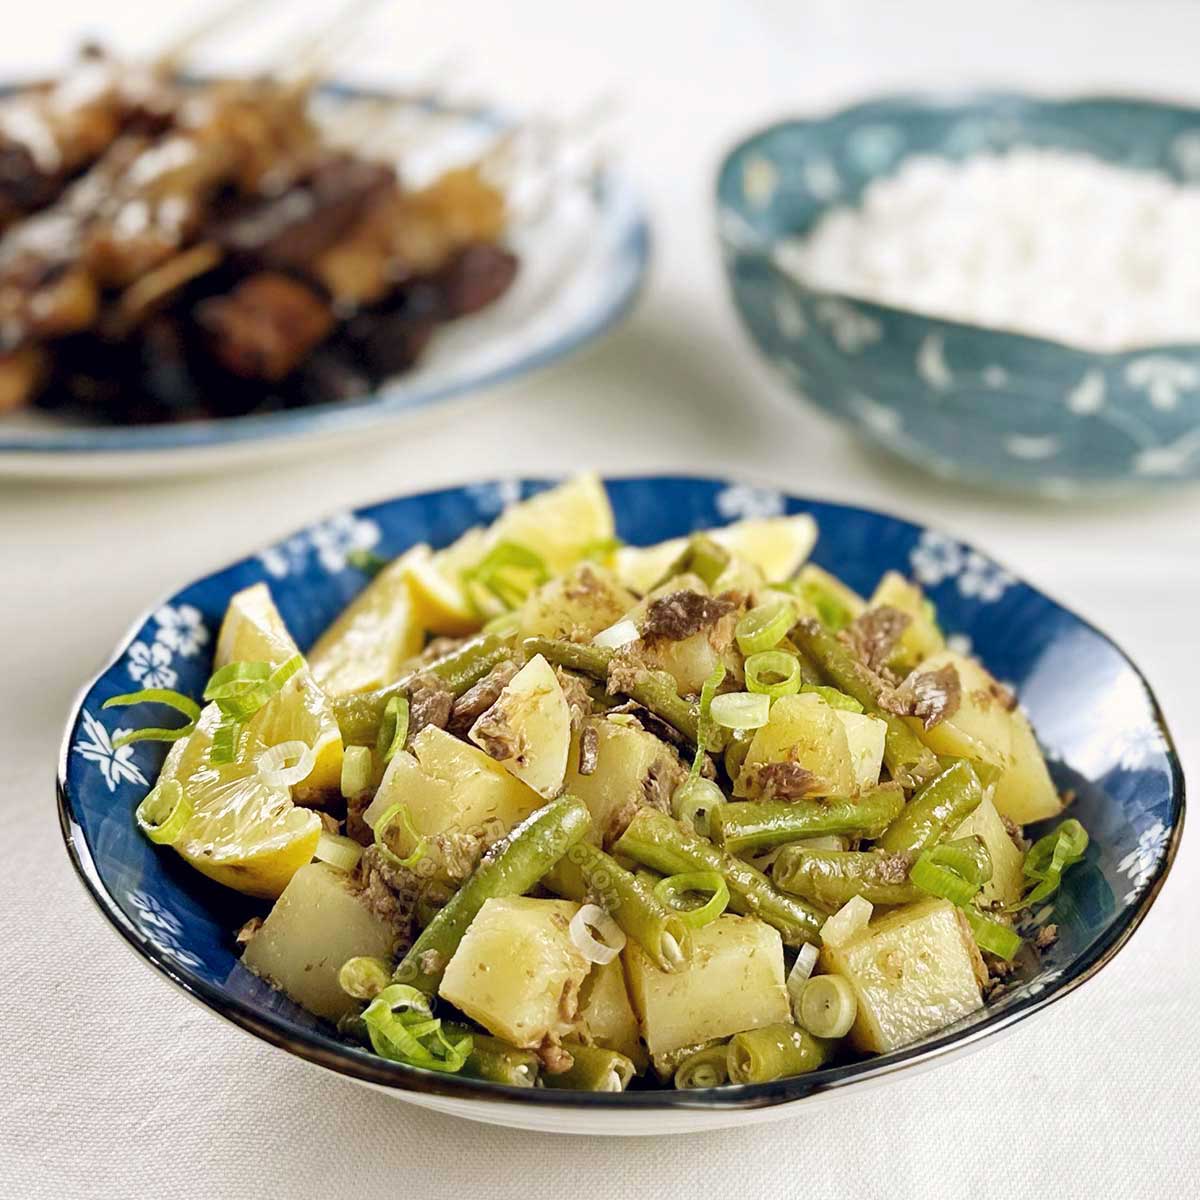 Potatoes and green beans salad with tinapa (smoked fish)